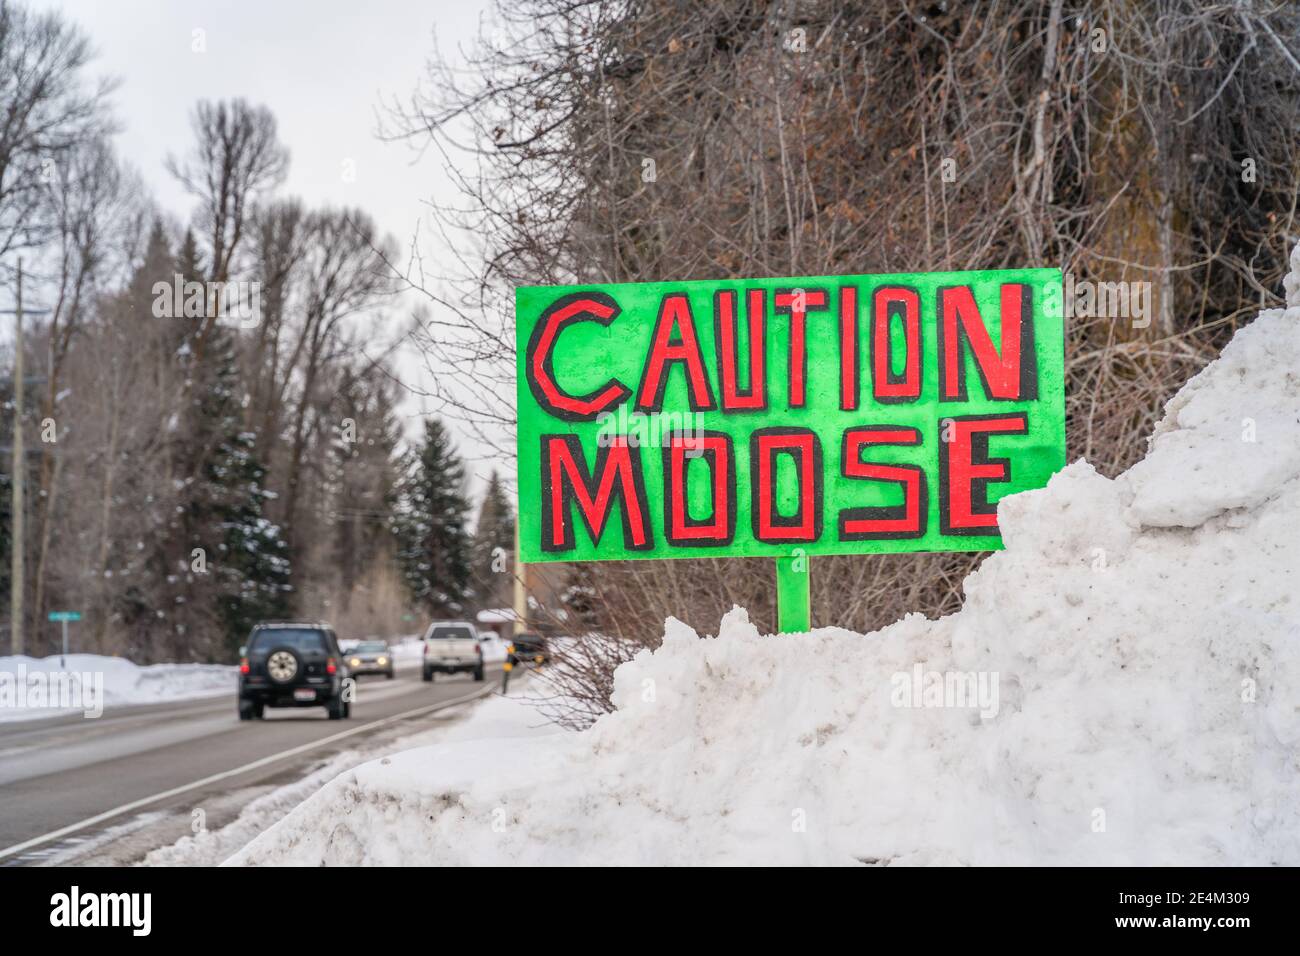 Accedi in riva alla neve lungo il lato della strada che recita 'attenzione Moose' in verde brillante con lettere rosse Foto Stock